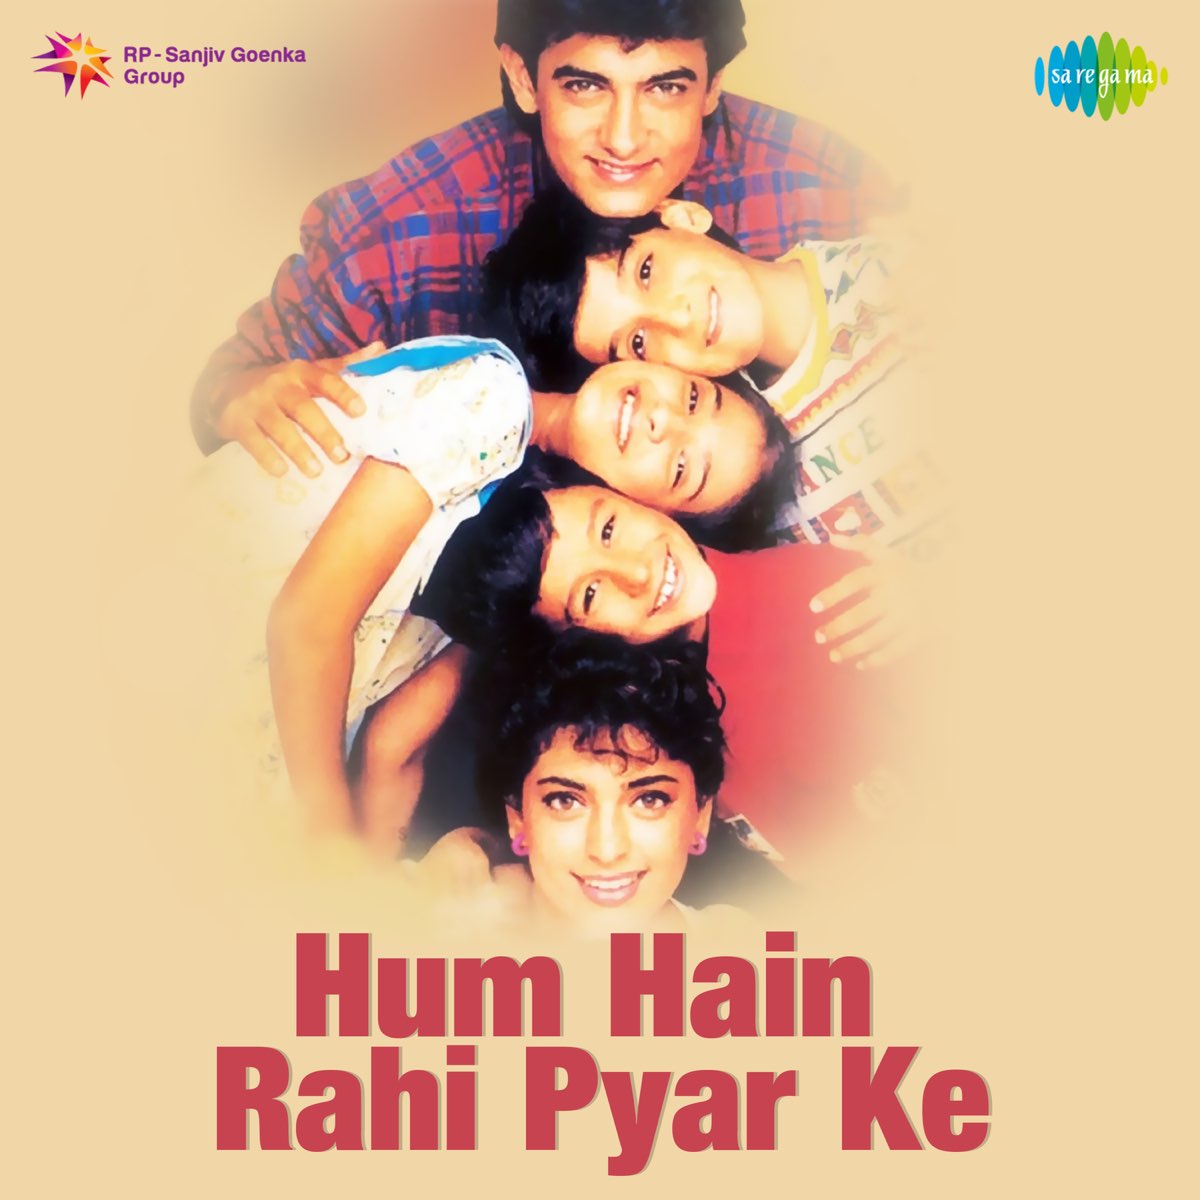 Hum Hain Rahi Pyar Ke (Original Motion Picture Soundtrack) - Single - Album  by Khaiyyaam - Apple Music